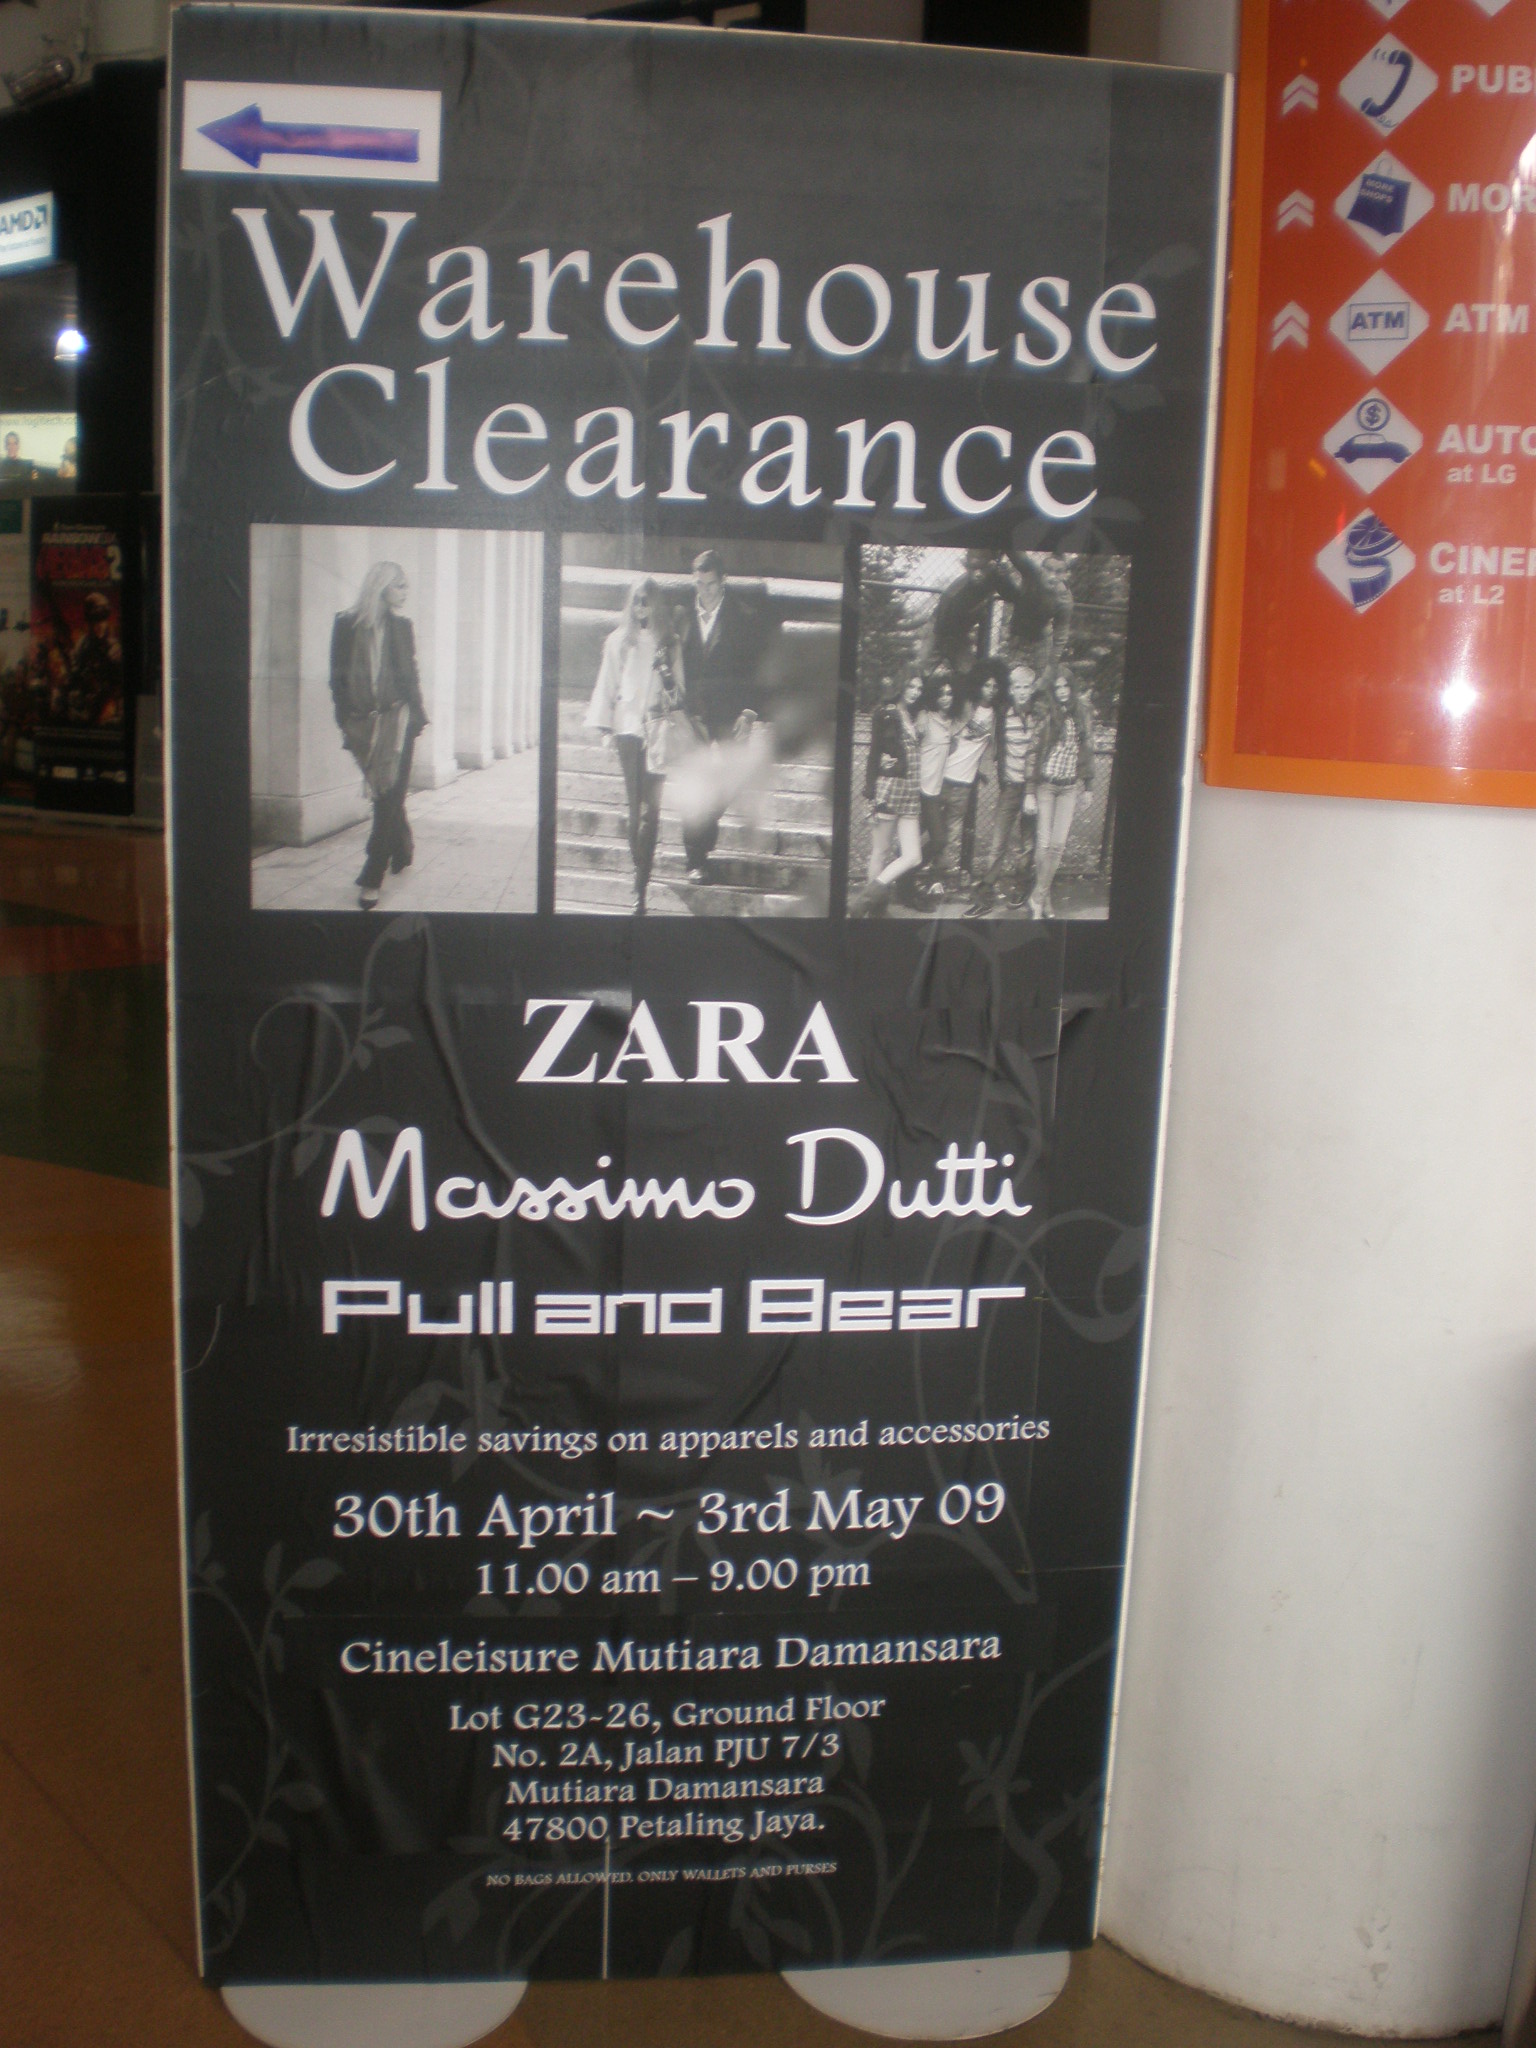 zara warehouse clearance